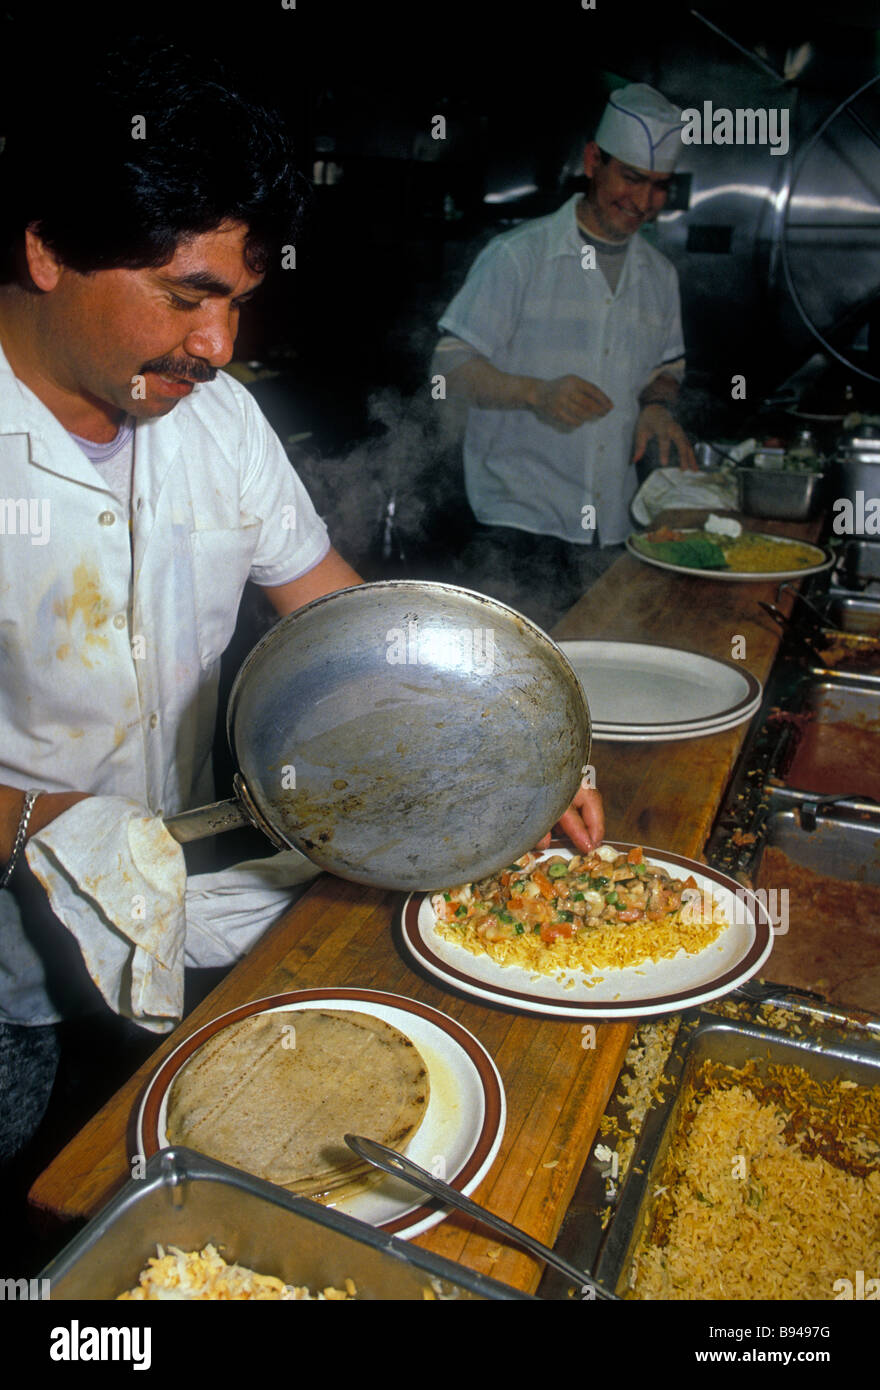 L'homme du Mexique, Cook, cuisine, restaurant mexicain, cuisine mexicaine de la nourriture et des boissons, nourriture et boissons, Novato, Californie, États-Unis Banque D'Images